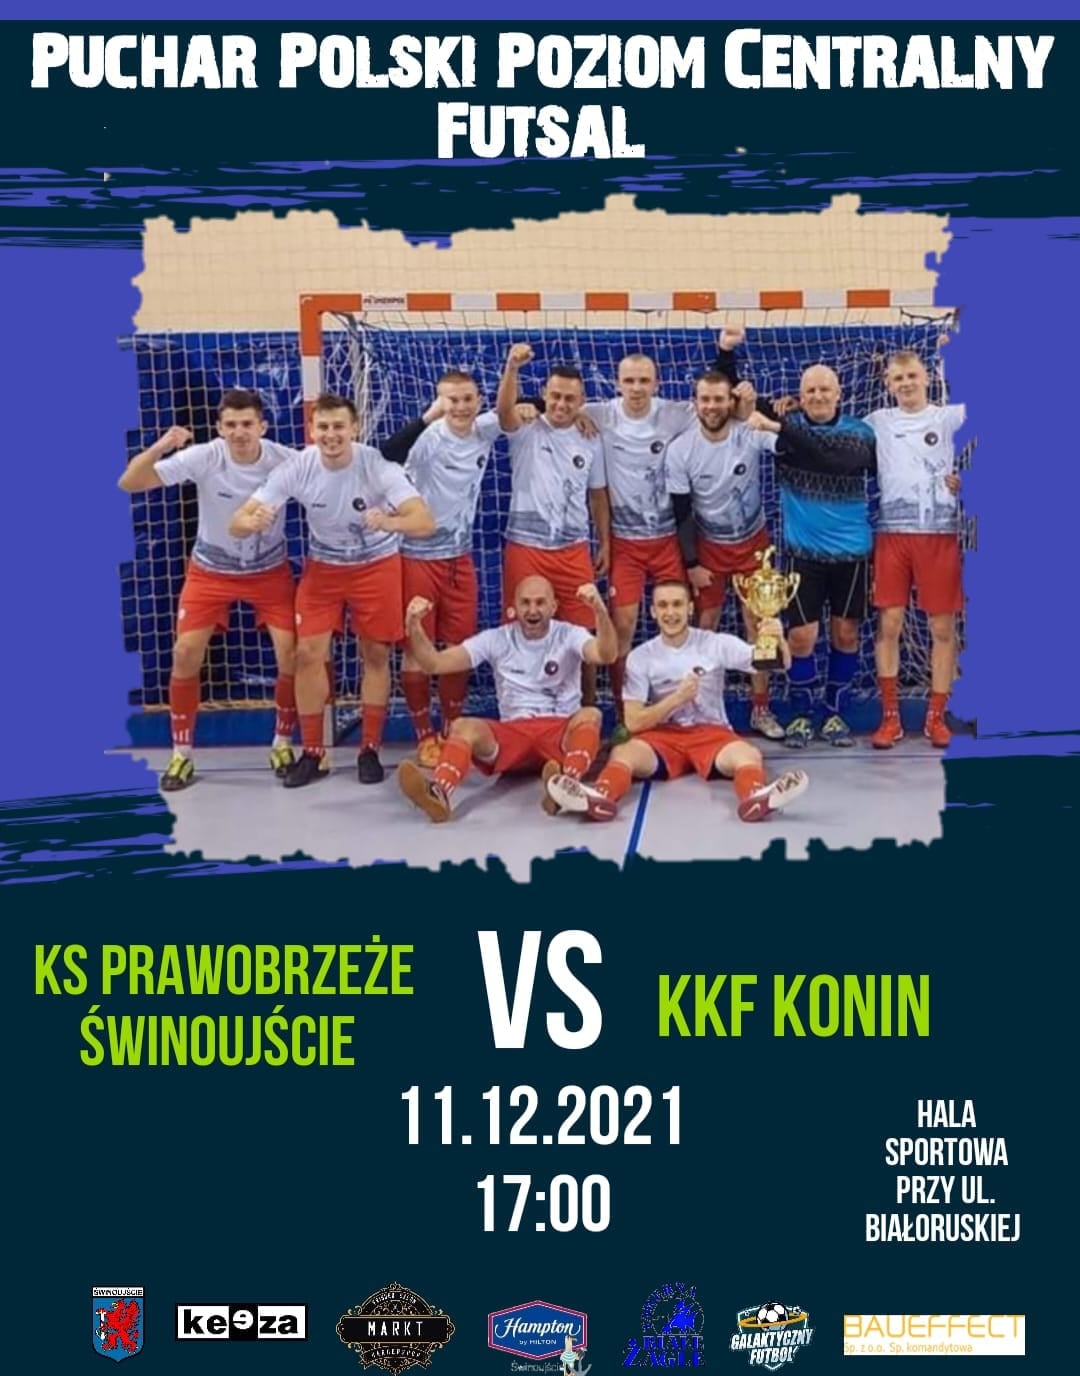 KS Prawobrzeże Świnoujście zaprasza na mecz futsalu w Pucharze Polski